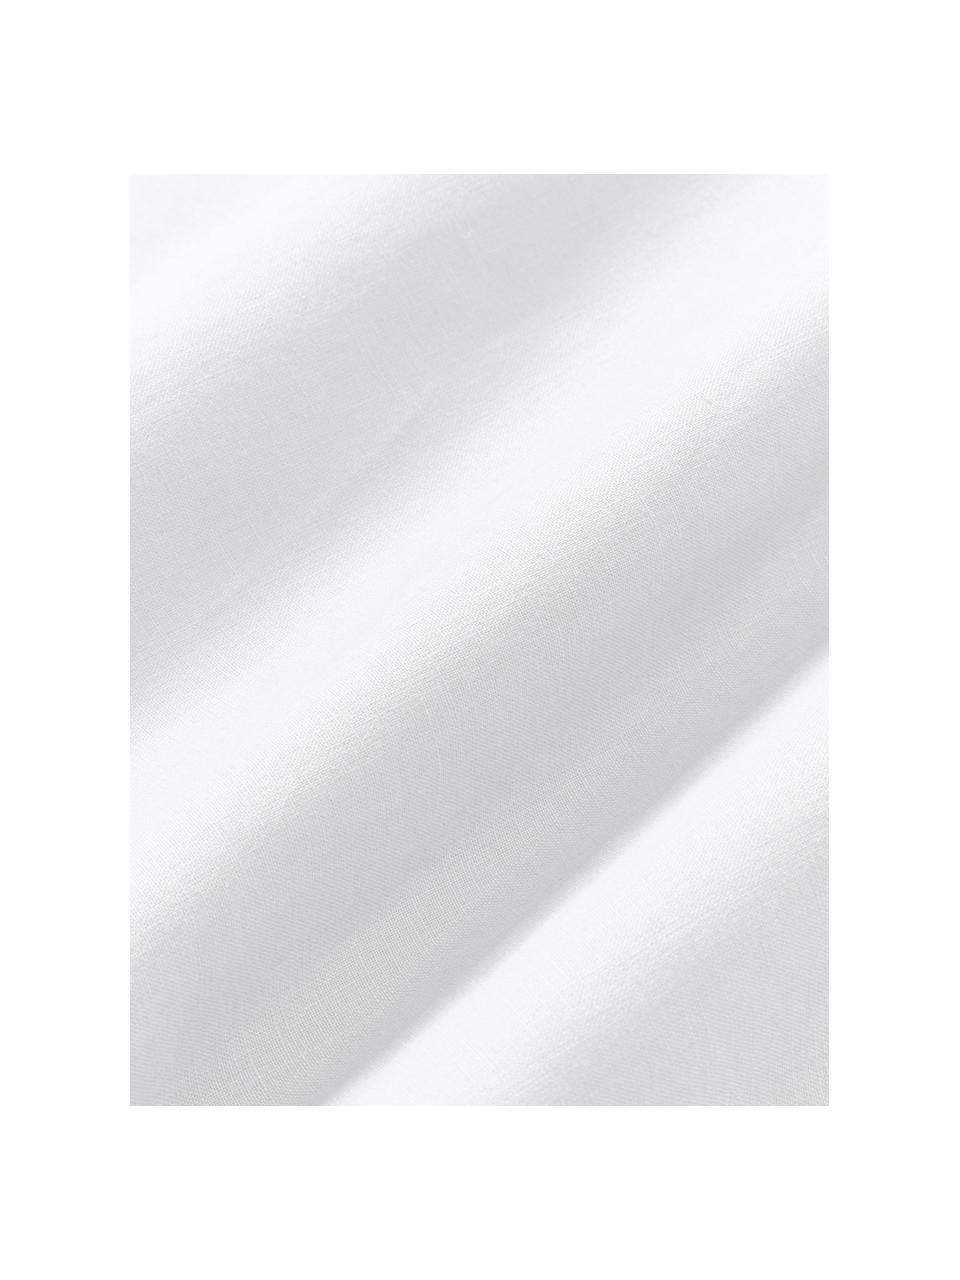 Gewaschenes Leinen-Bettlaken Airy, Weiss, B 240 x L 280 cm